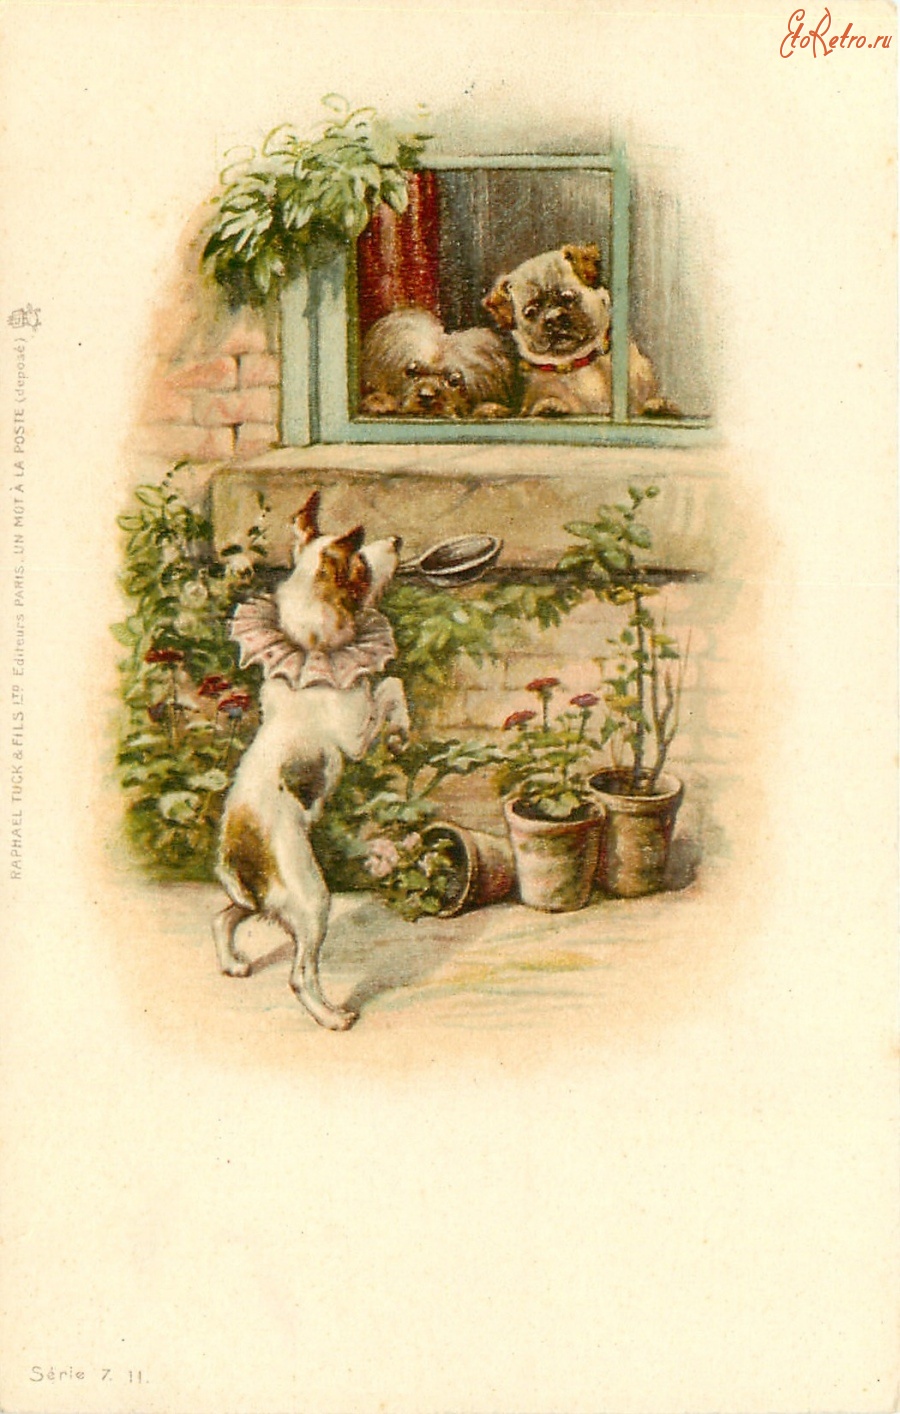 Ретро открытки - Театр одного актера. Терьер в саду и две собаки в окне